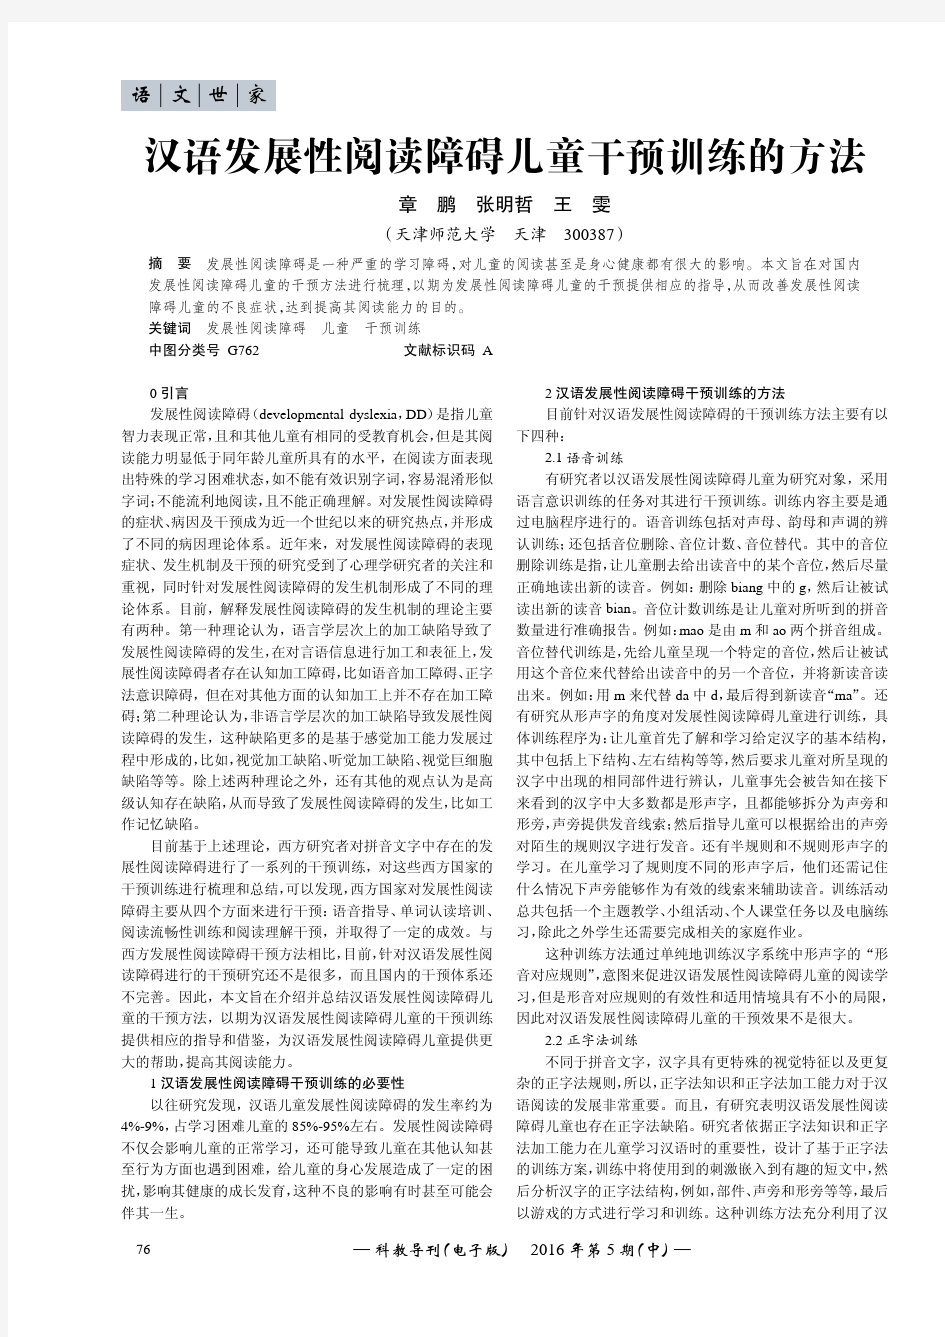 汉语发展性阅读障碍儿童干预训练的方法